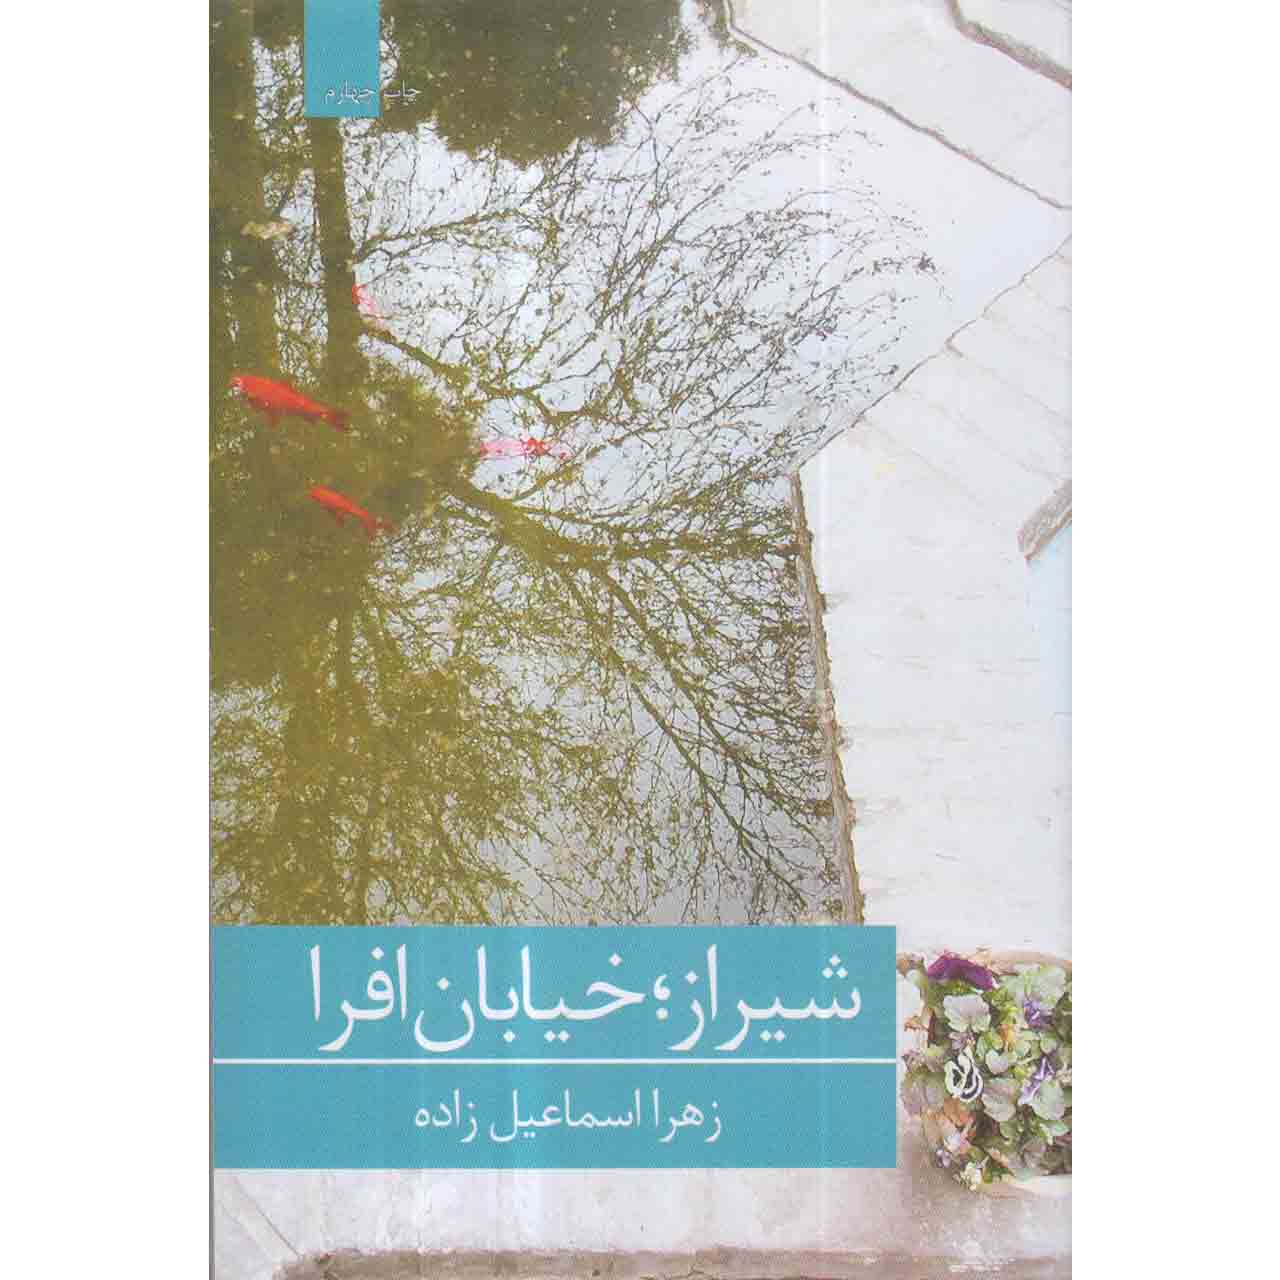 کتاب شیراز خیابان افرا اثر زهرا اسماعیل زاده انتشارات برکه خورشید